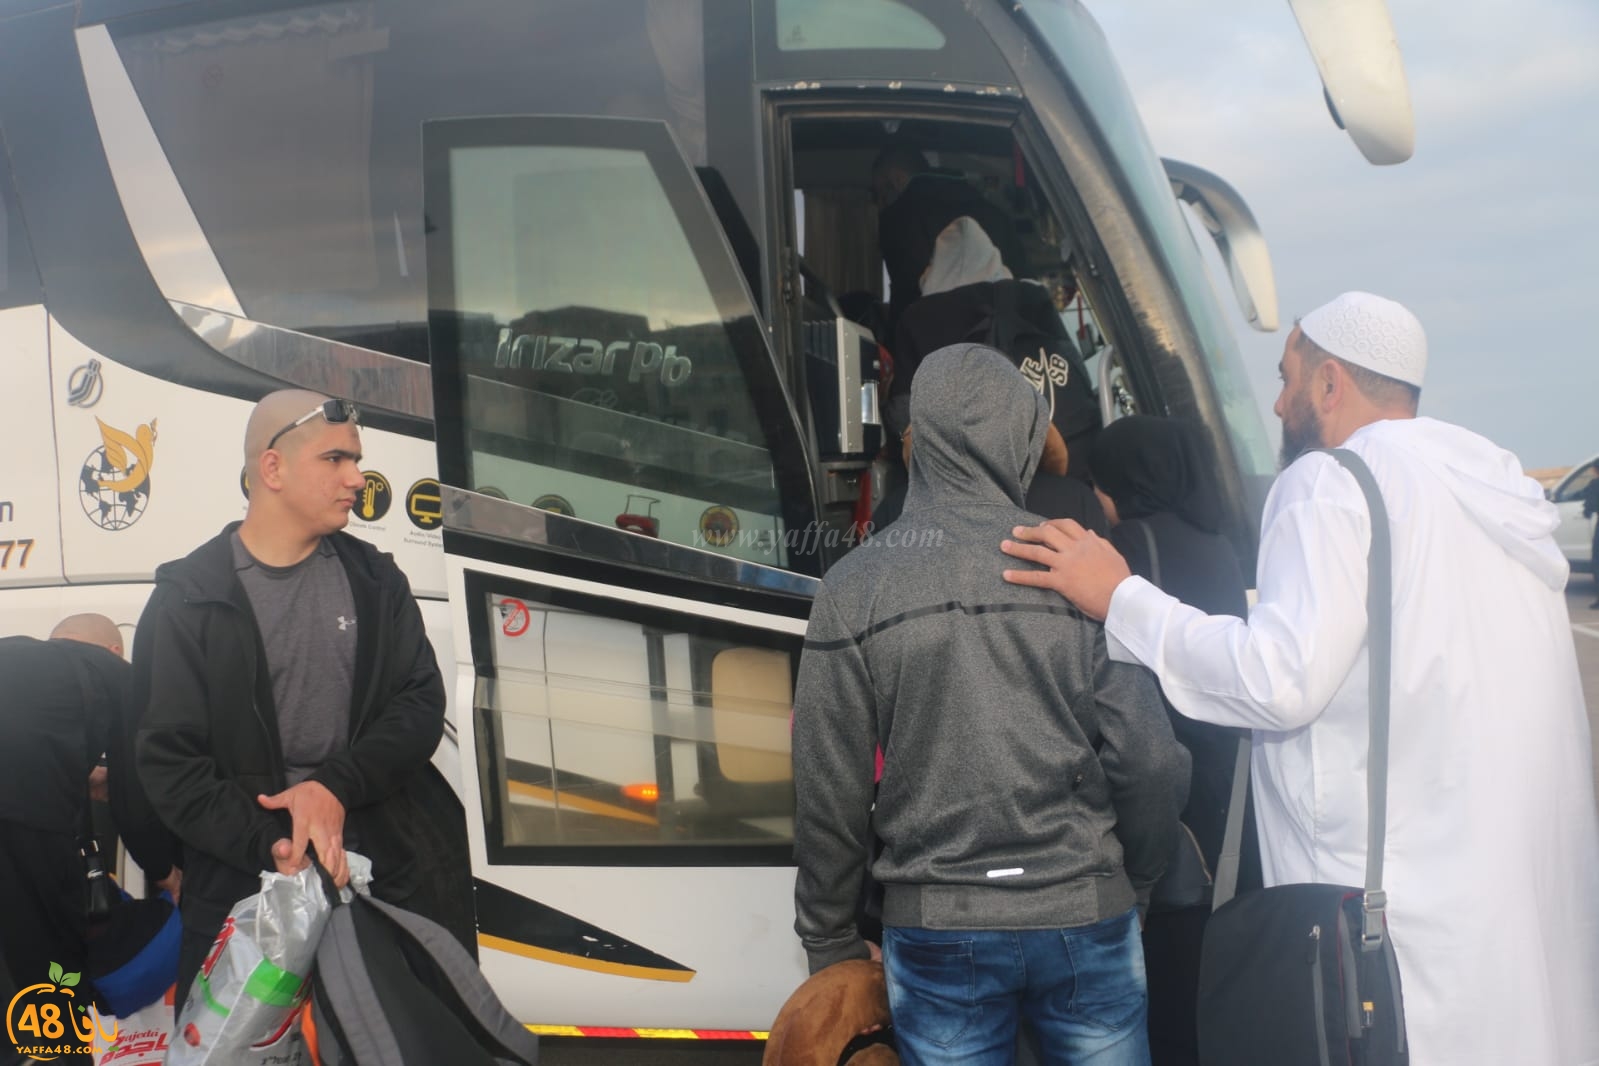  بالصور: انطلاق حافلة الفوج الرابع من معتمري يافا إلى الديار الحجازية 